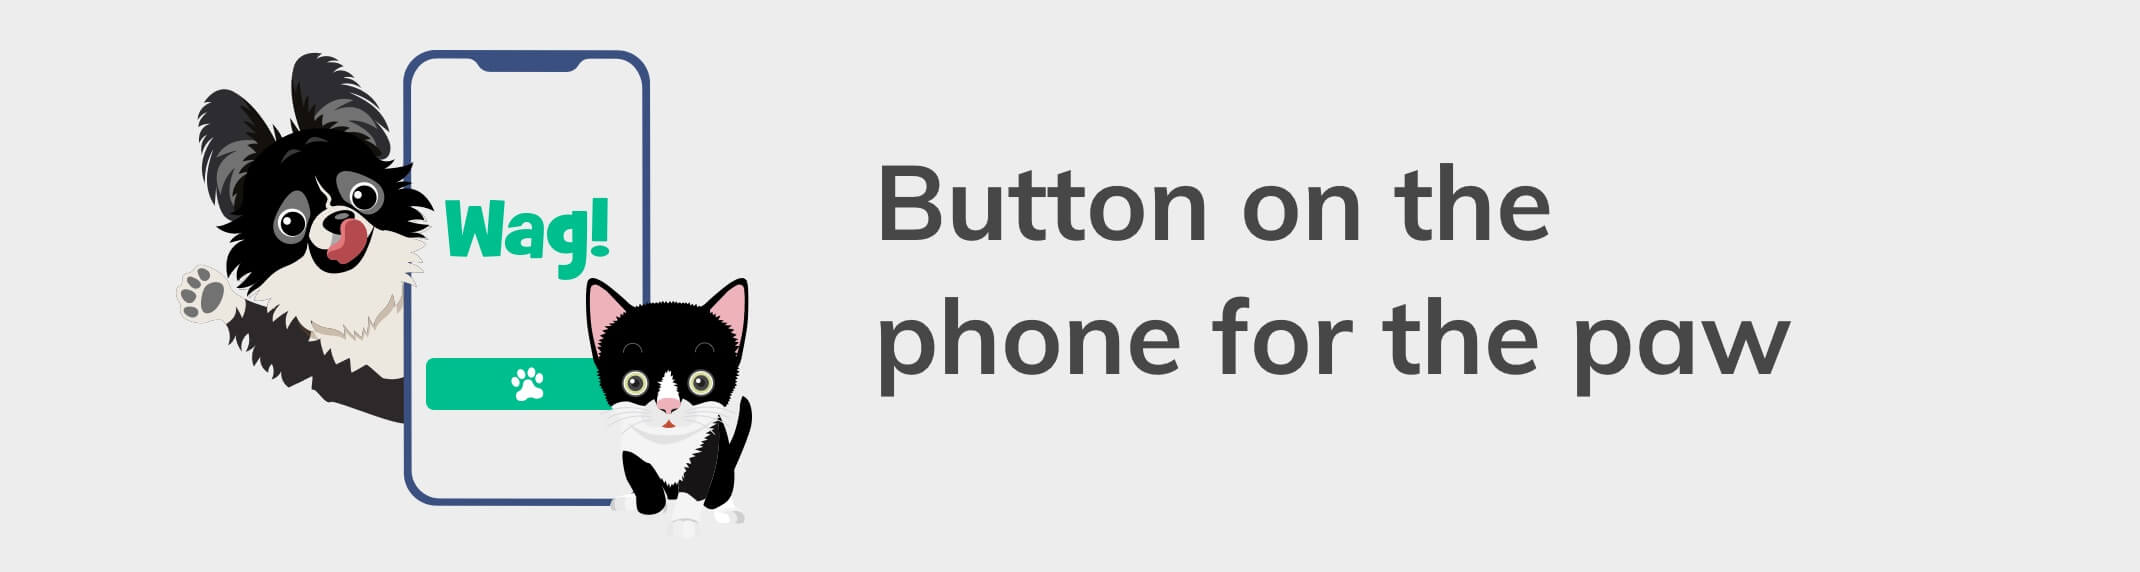 button-onxphonex1a.jpg